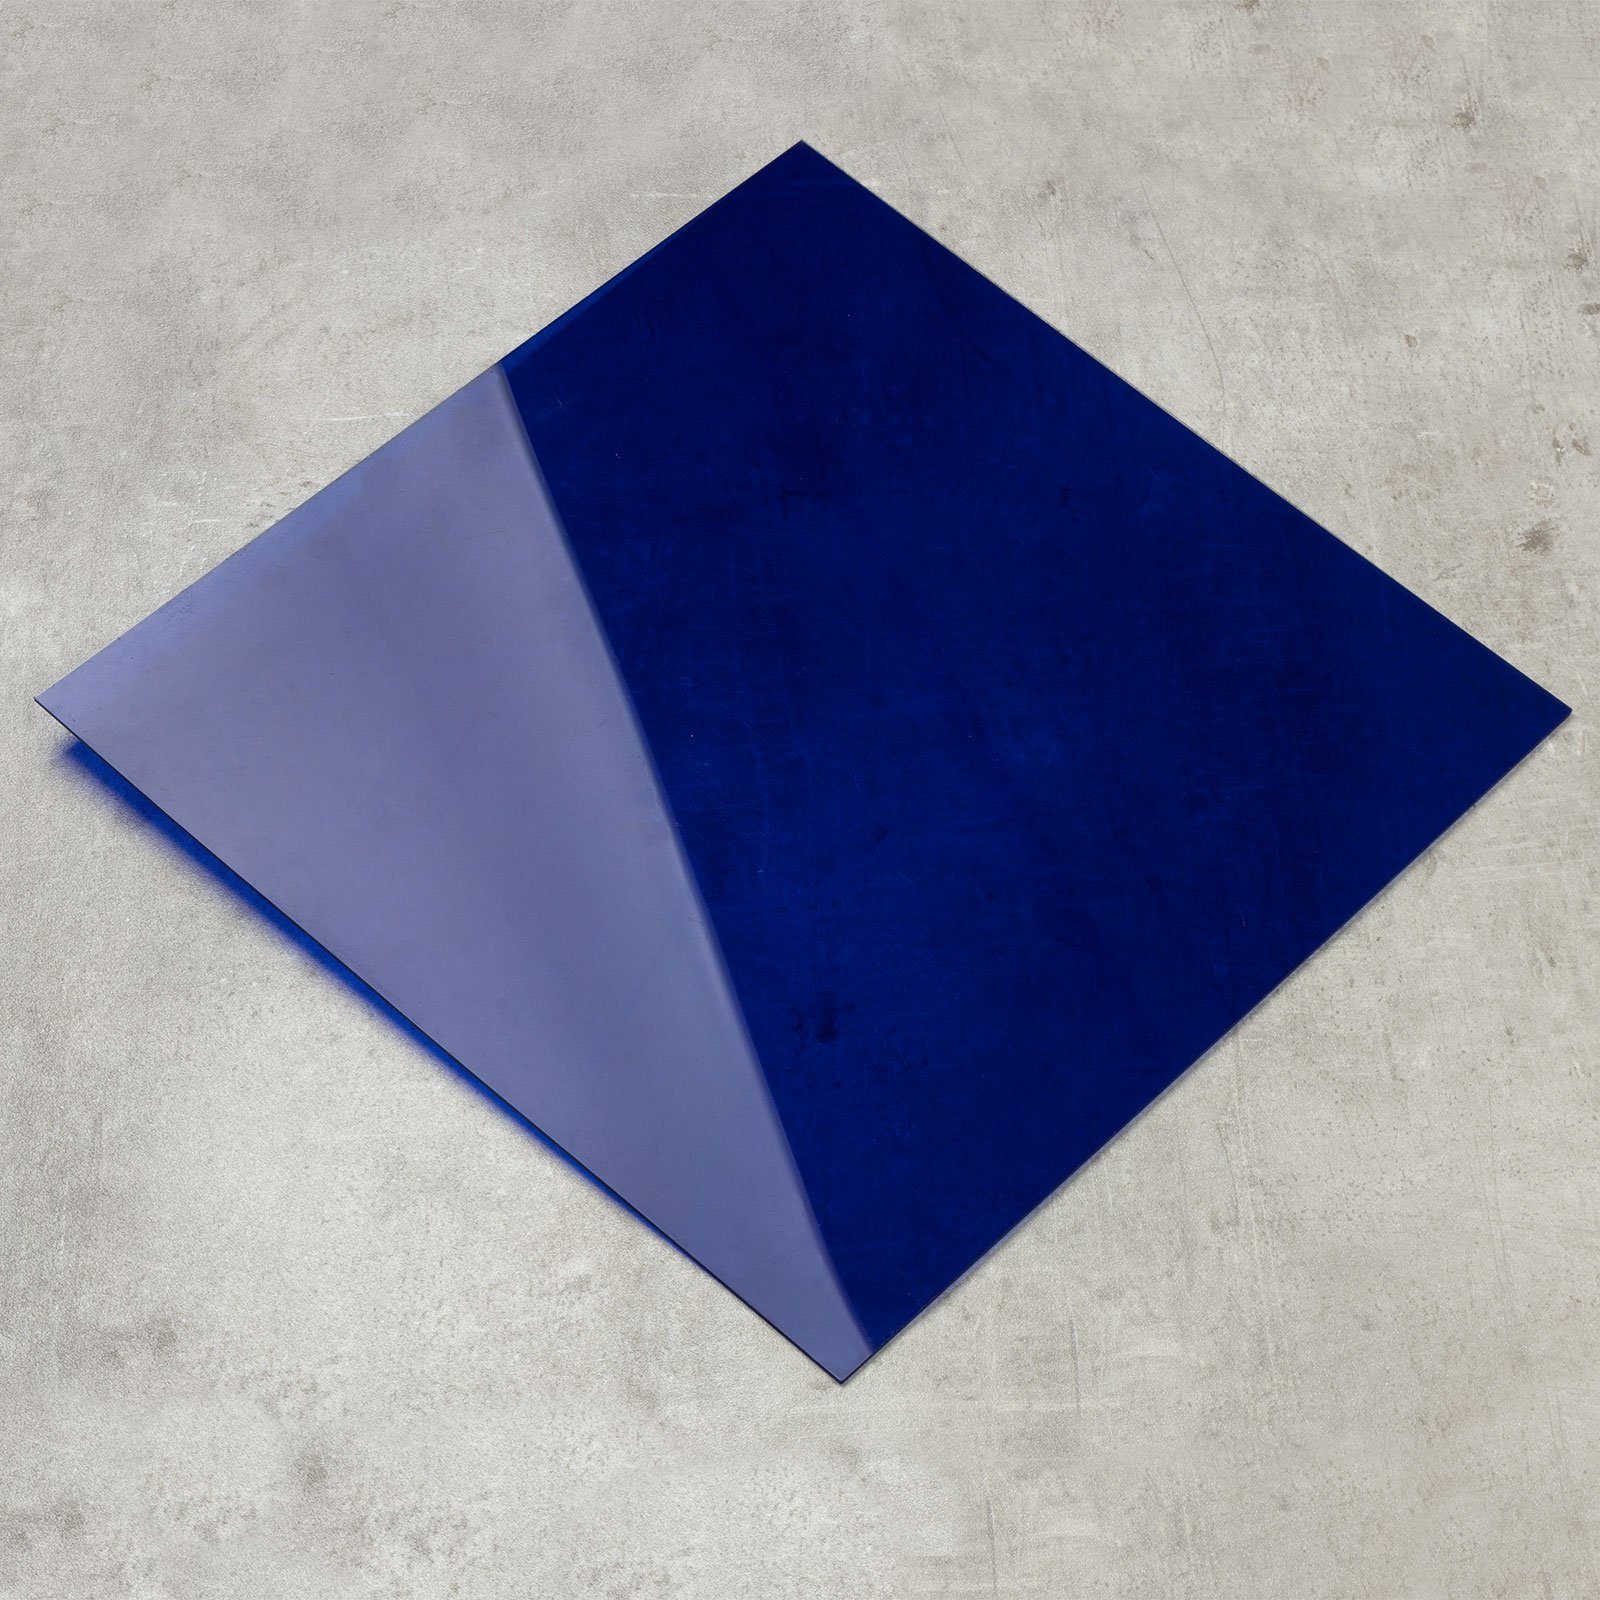 Karat Glas Farbige Acrylglasplatten, 3 mm, erhältlich in 6 Farben & 2 Größen, Vielfältige Anwendung, Transparent oder matt Blau